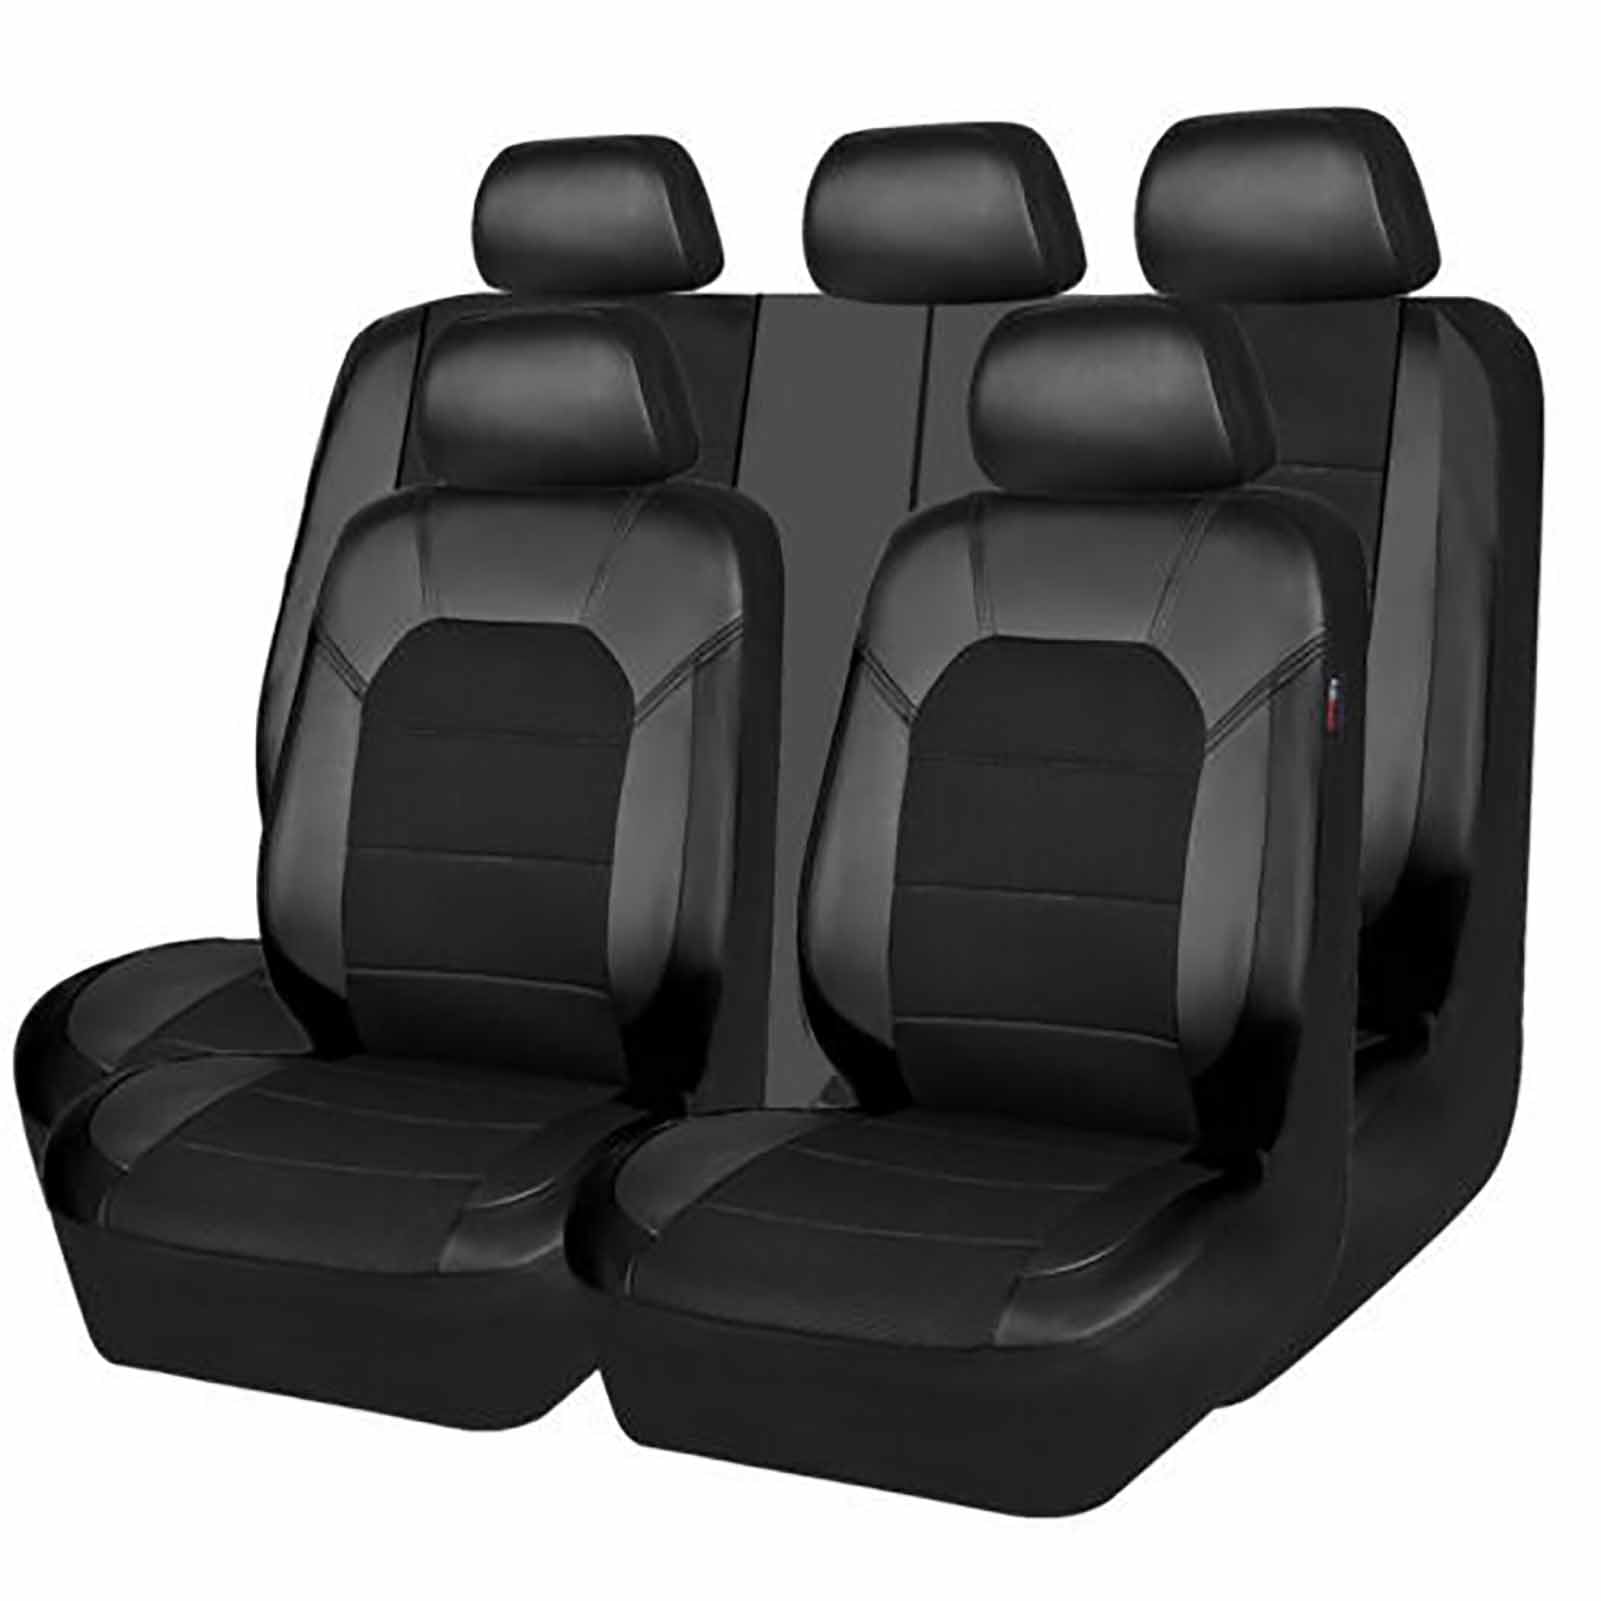 XPZBTV Auto Sitzbezüge Sets für Ford Explorer VI 2019 2020 2021 2022 2023 2024, Allwetter rutschfest Wasserdicht Atmungsaktiv Leicht Reinigen Sitzbezüge Auto, Auto Accessoires,Black von XPZBTV